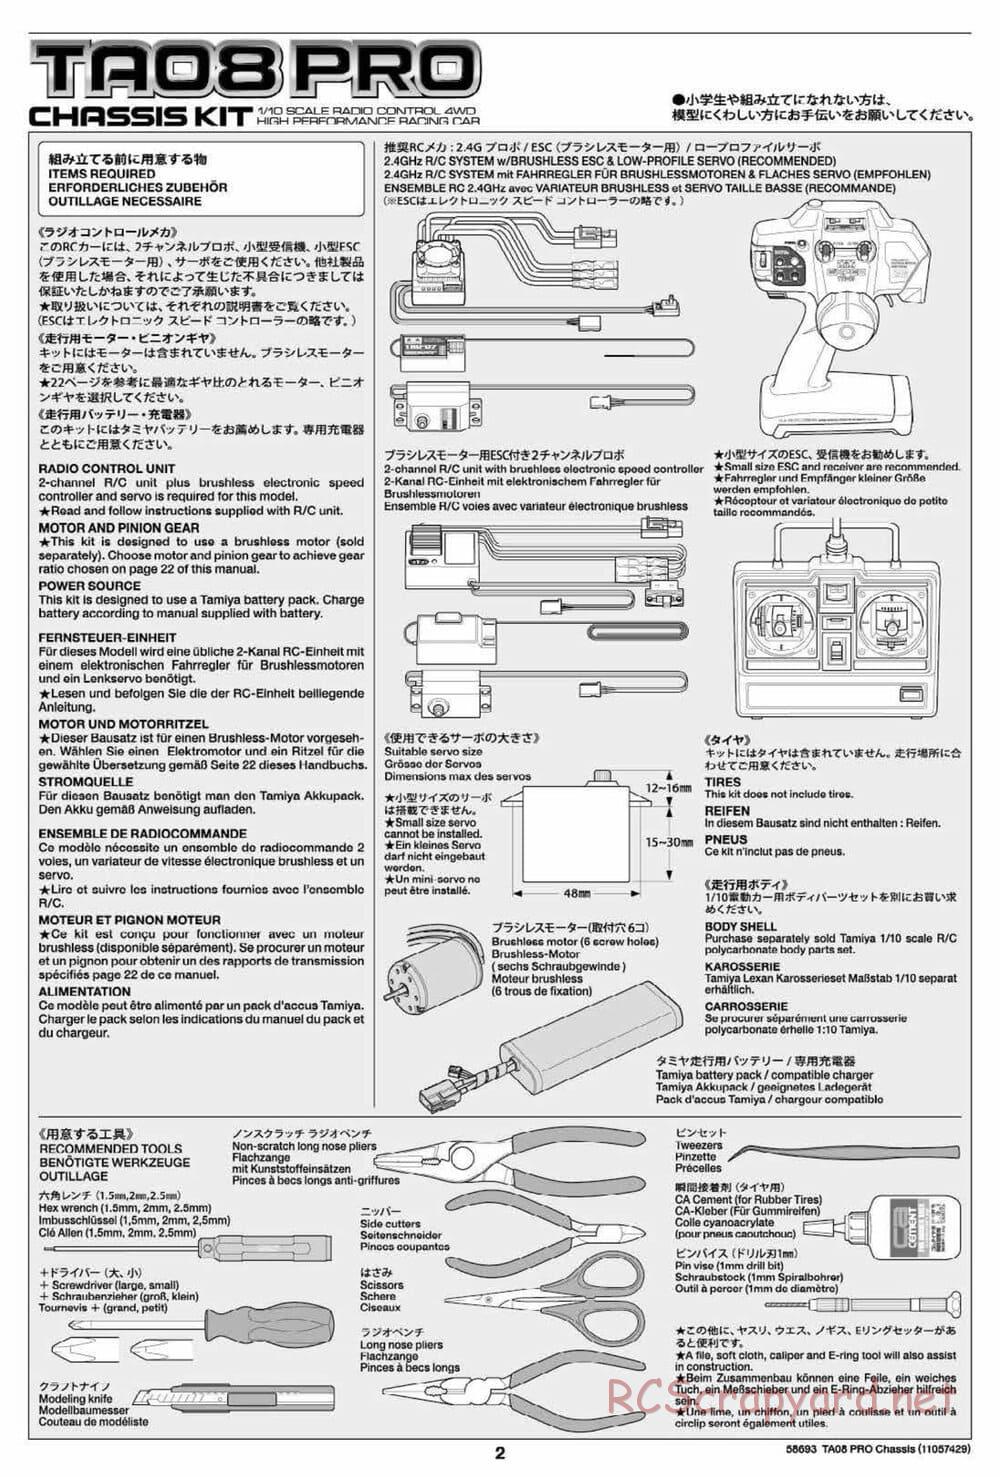 Tamiya - TA08 Pro Chassis - Manual - Page 2